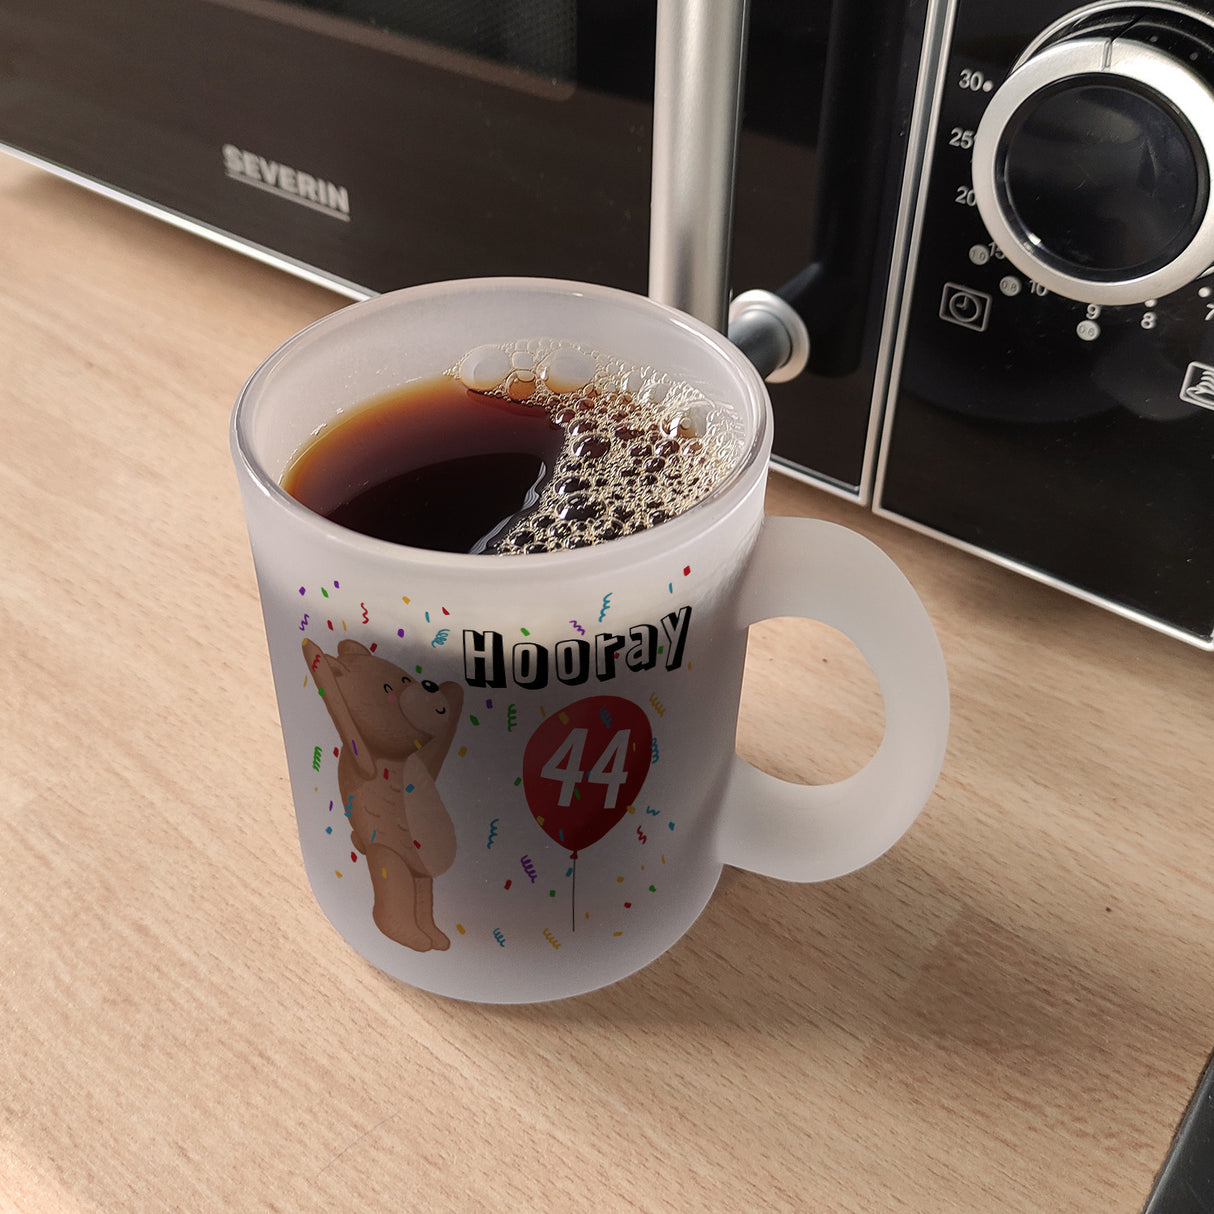 Witziger Kaffeebecher für den 44. Geburtstag mit Motiv: Hooray